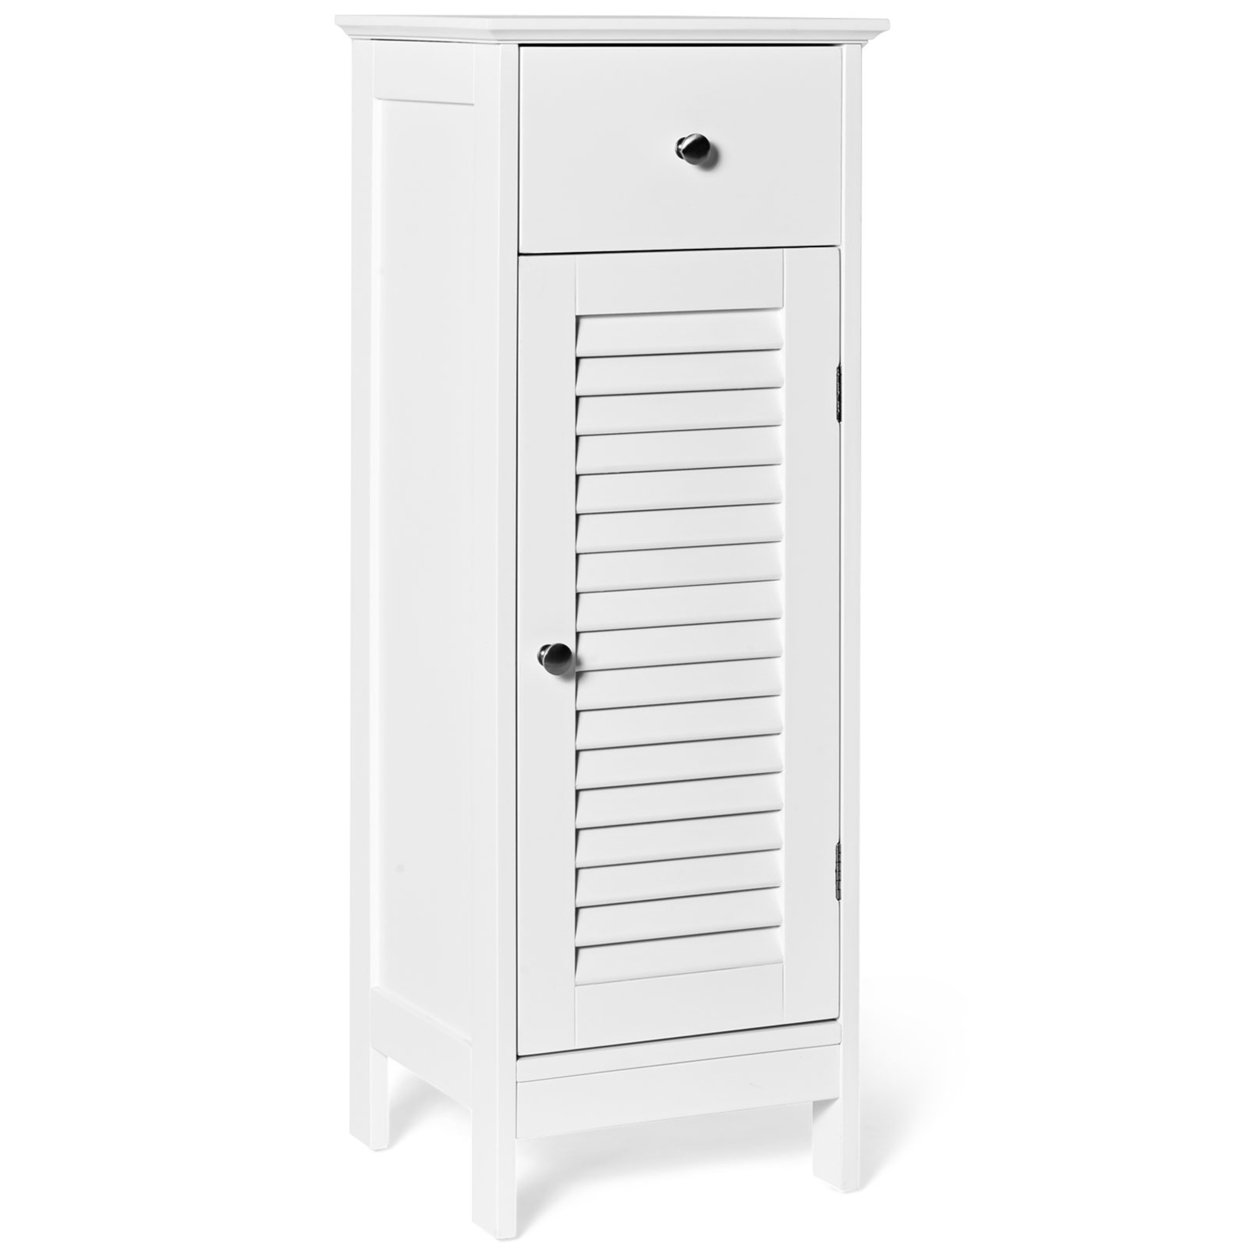 Bathroom Floor Storage Cabinet Side Wooden Organizer W/ Drawer & Shutter Door